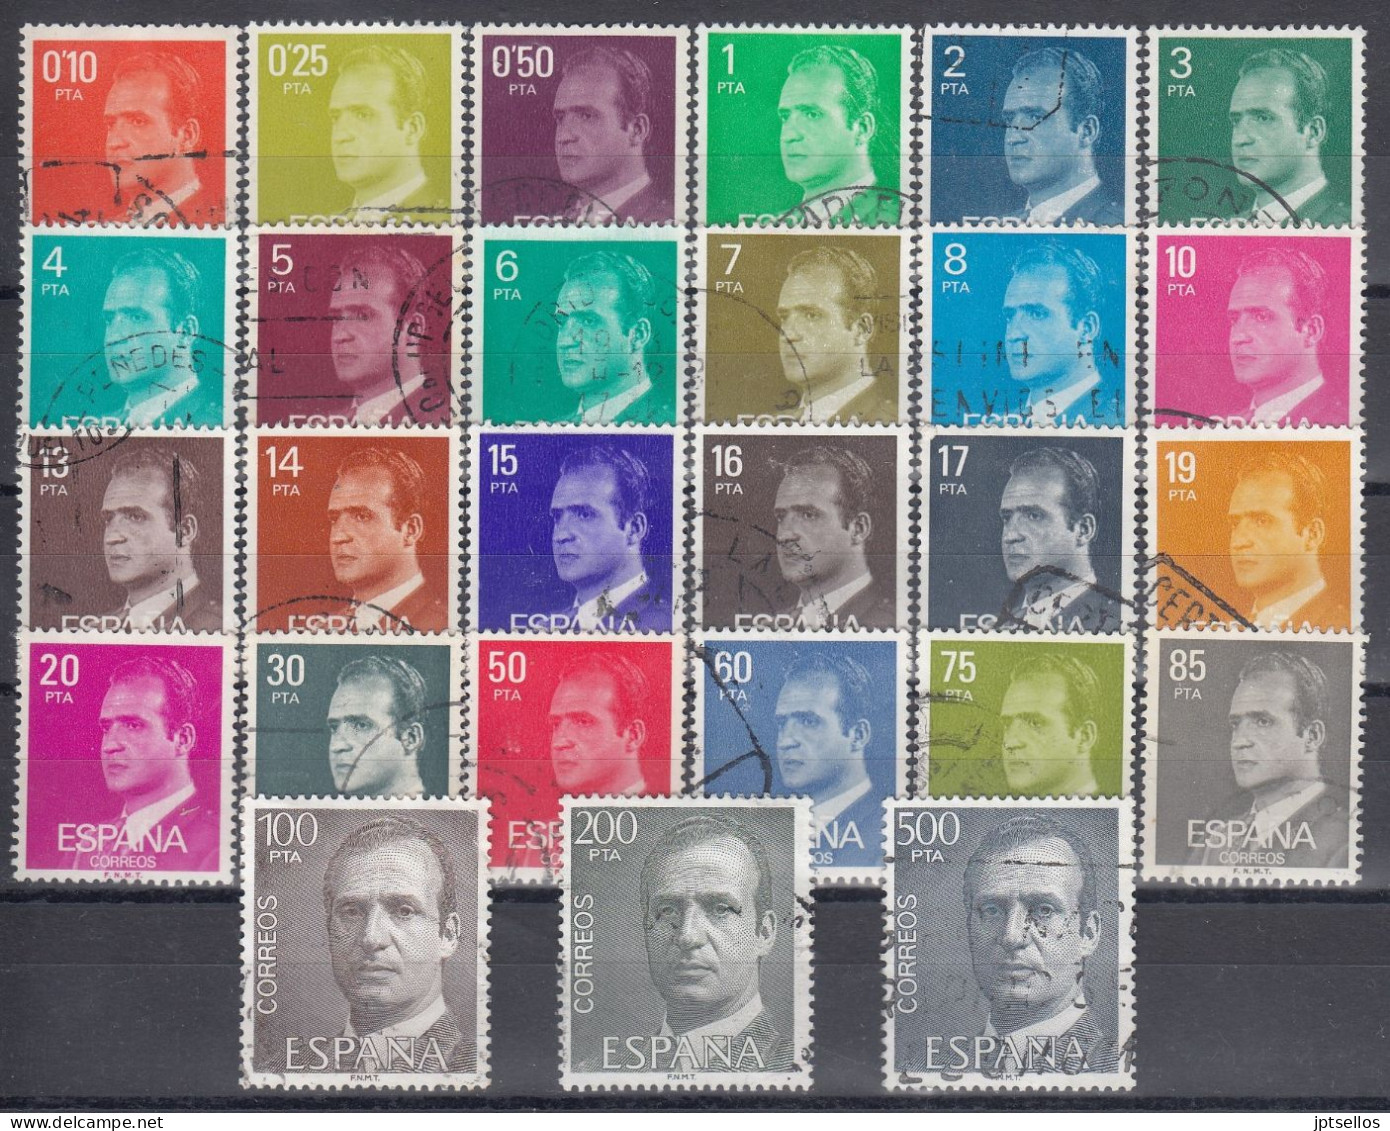 ESPAÑA 1982-1990 EDIFIL Nº 2386P/2607P SERIE FOSFORO USADO 27 VALORES REF.02 - Used Stamps